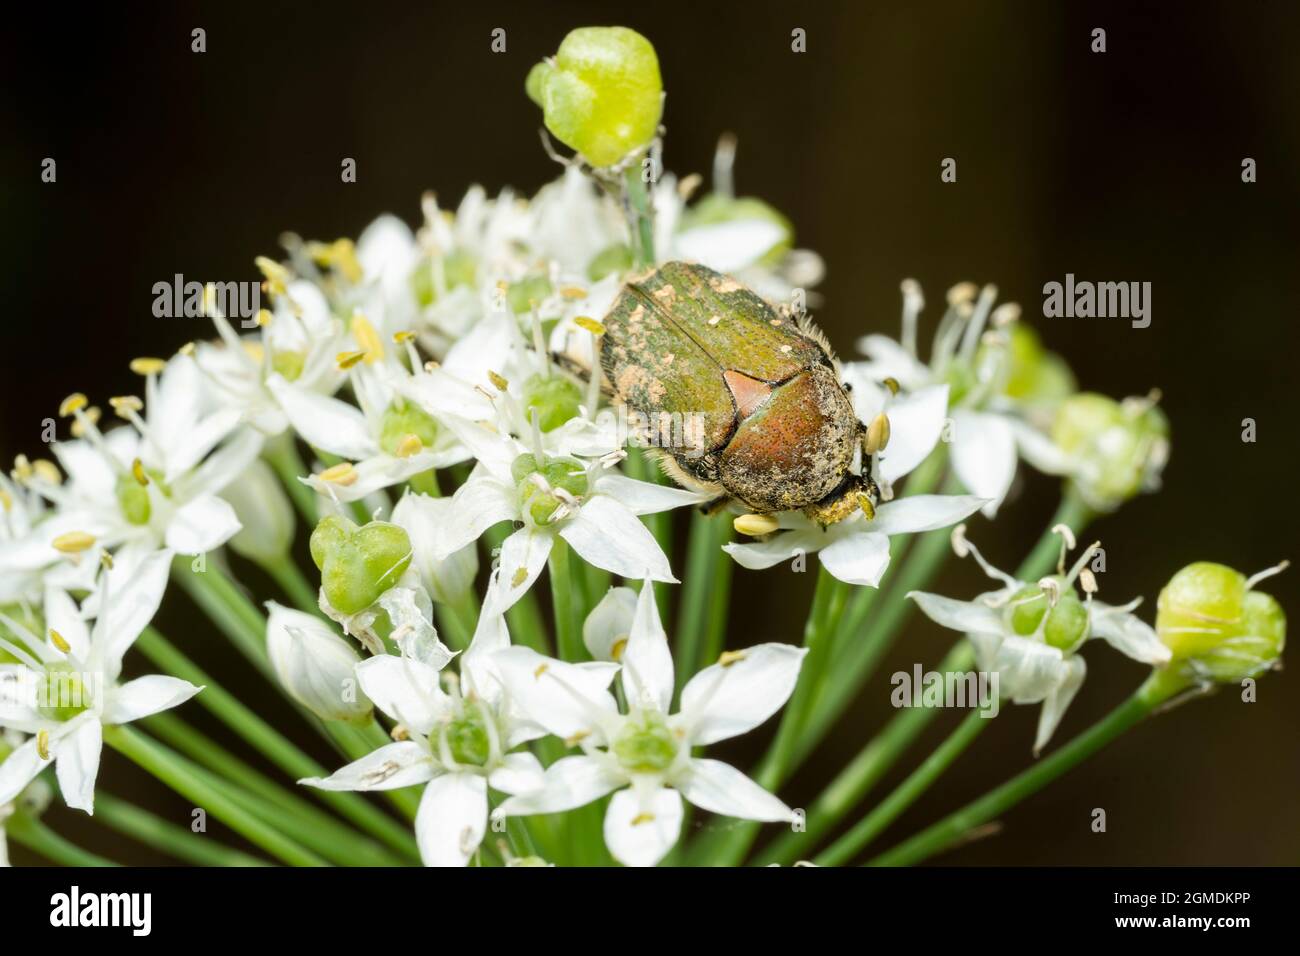 Gametis jucunda (Faldermann) on flower of garlic chives (Allium tuberosum), Isehara City, Kanagawa Prefecture, Japan Stock Photo